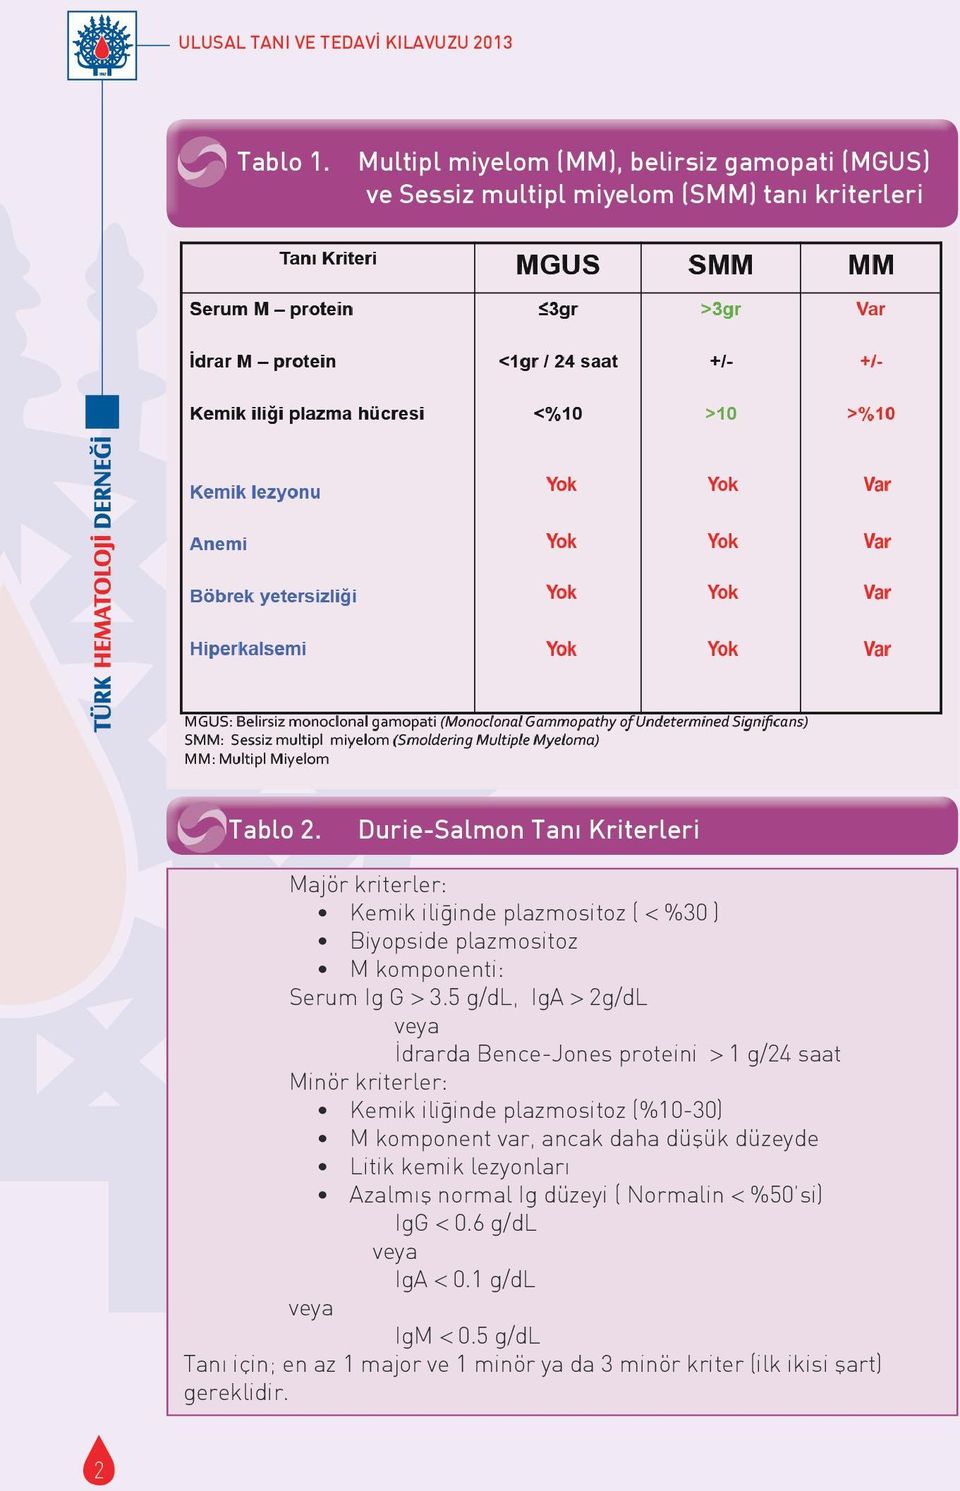 5 g/dl, IgA > 2g/dL veya İdrarda Bence-Jones proteini > 1 g/24 saat Minör kriterler: Kemik ilig inde plazmositoz (%10-30) M komponent var, ancak daha düşük düzeyde